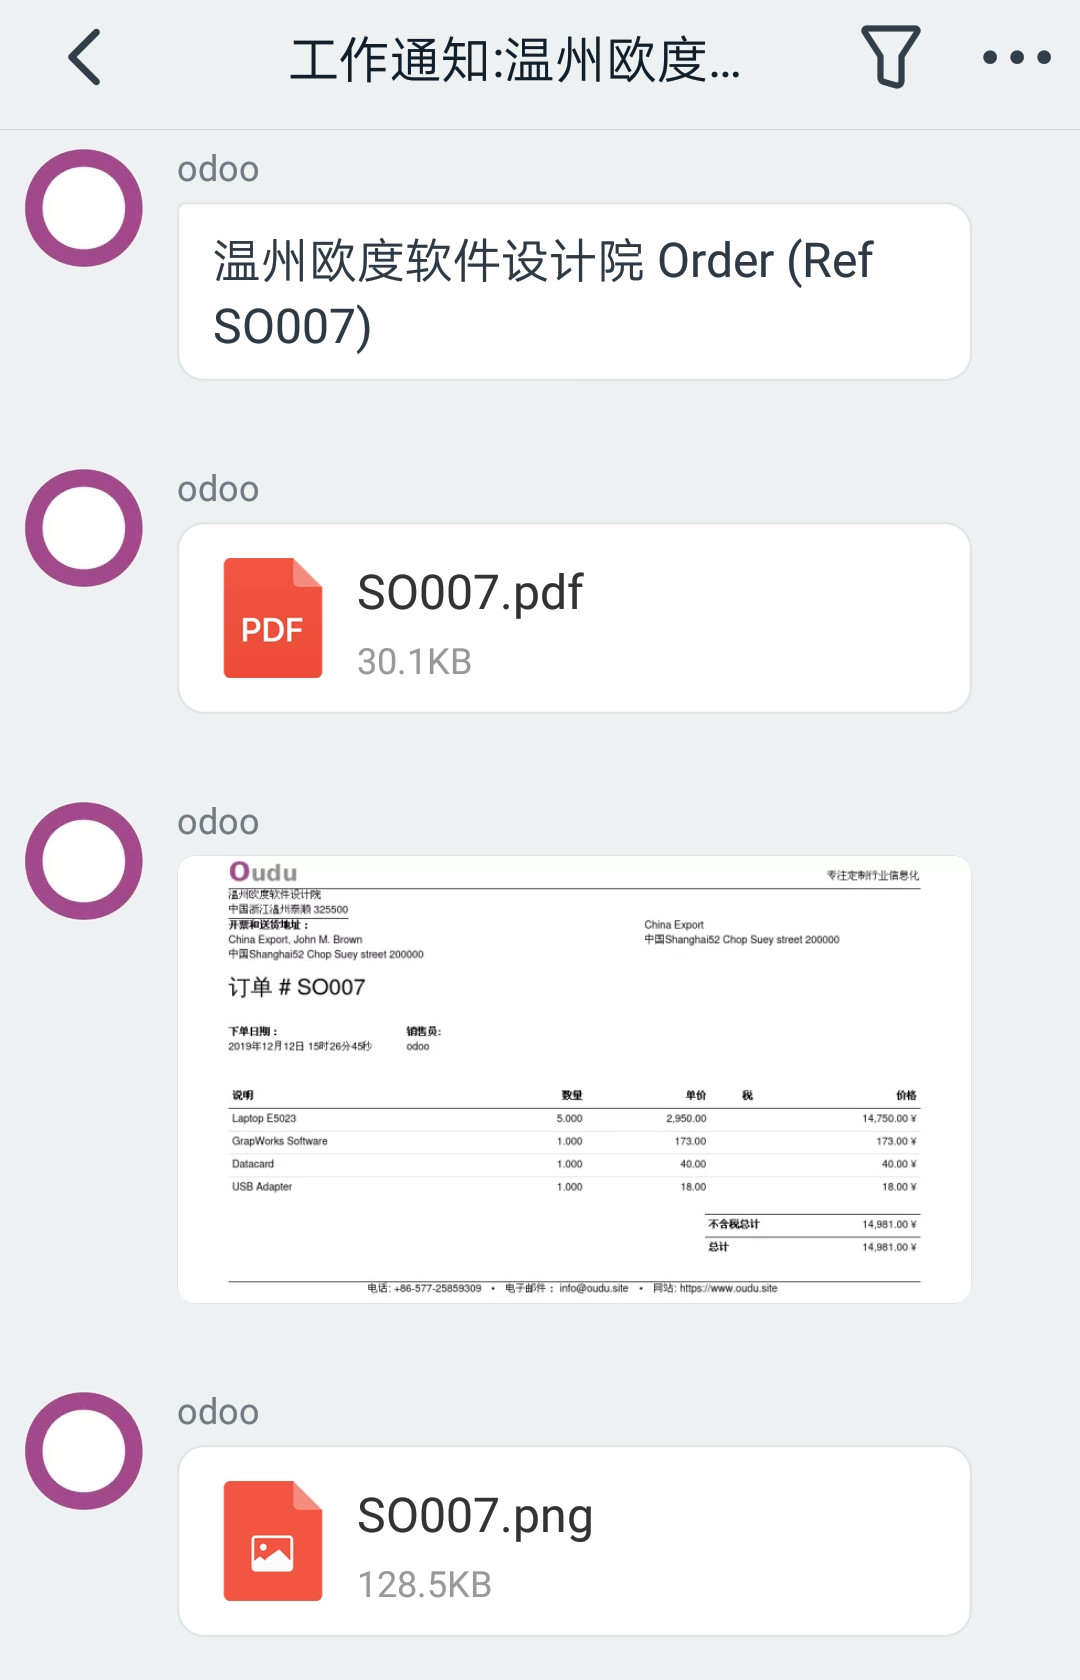 ODOO销售订单发送钉钉报表消息效果